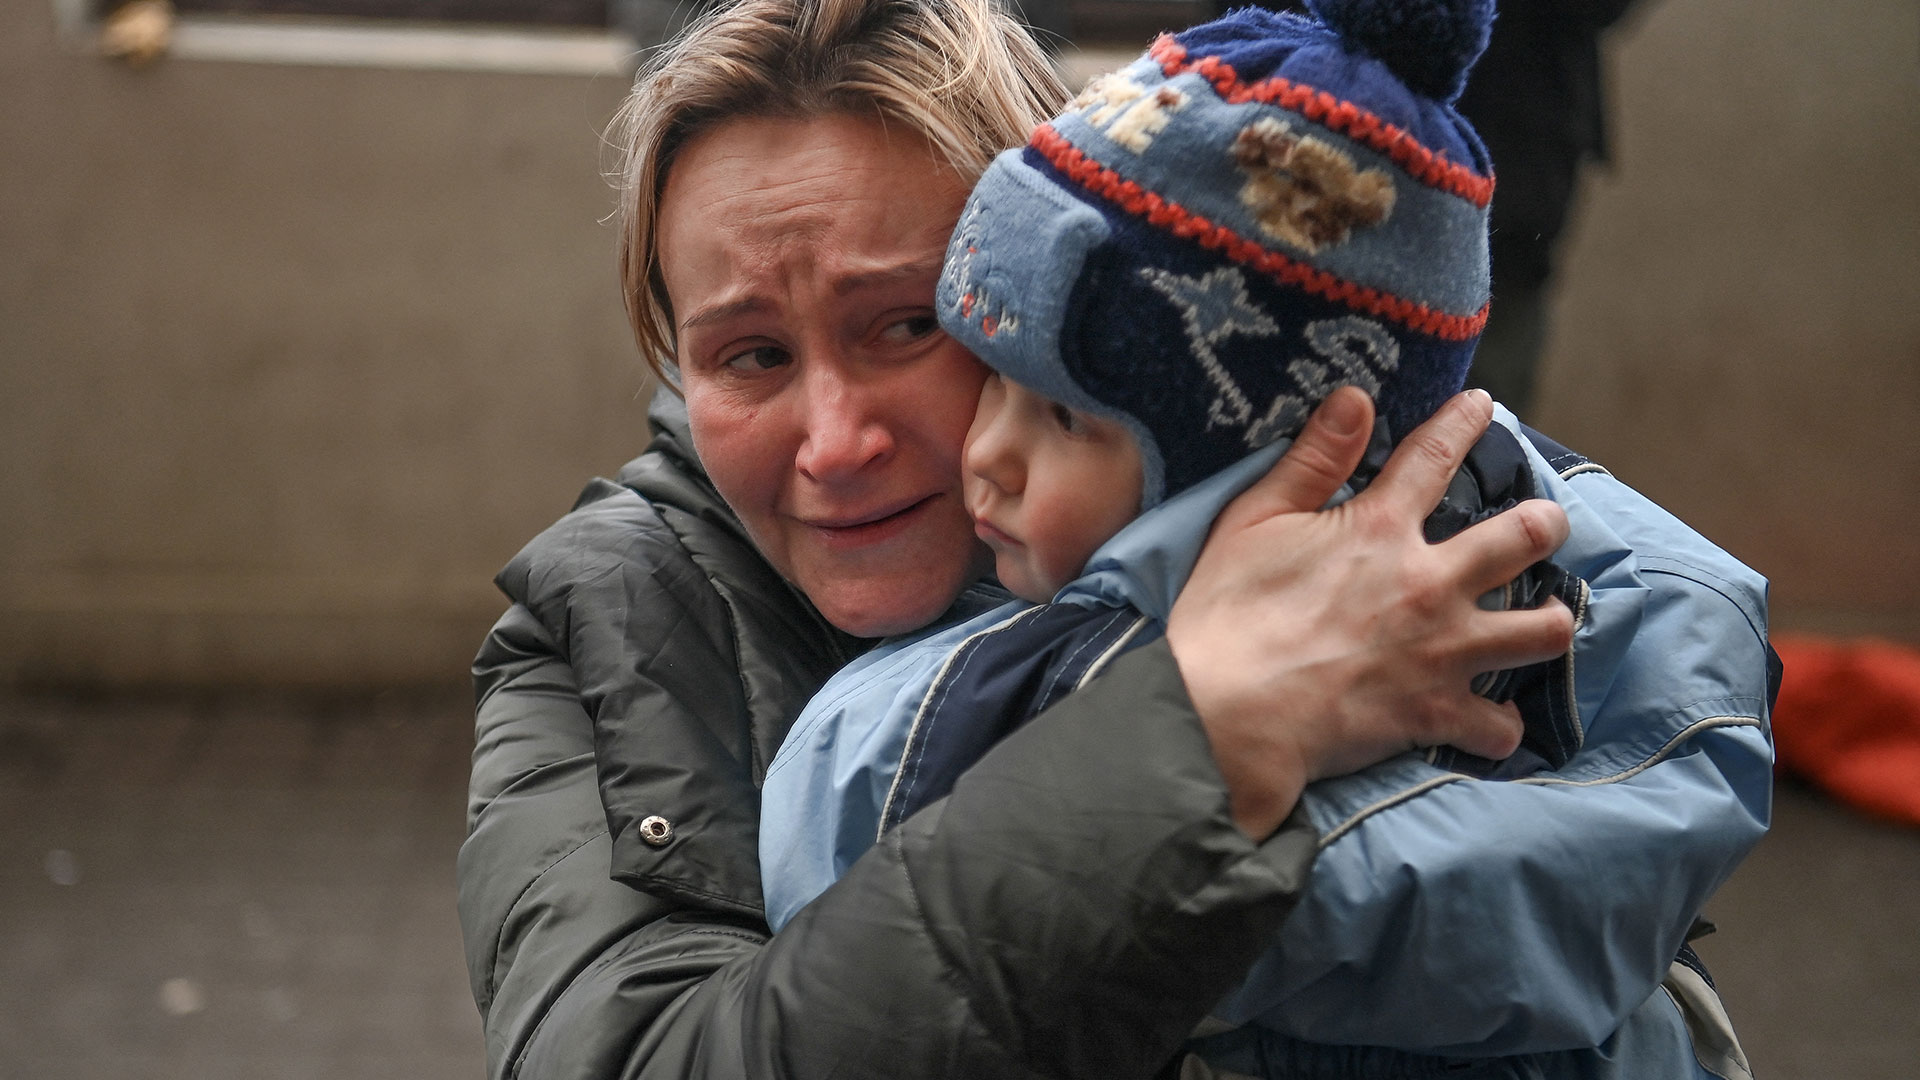  Rusia confirmó que más de 300.000 niños ucranianos se encuentran ya en su territorio desde el principio del conflicto en lo que el Gobierno de Kiev considera una “expulsión ilegal” de su ciudadanía